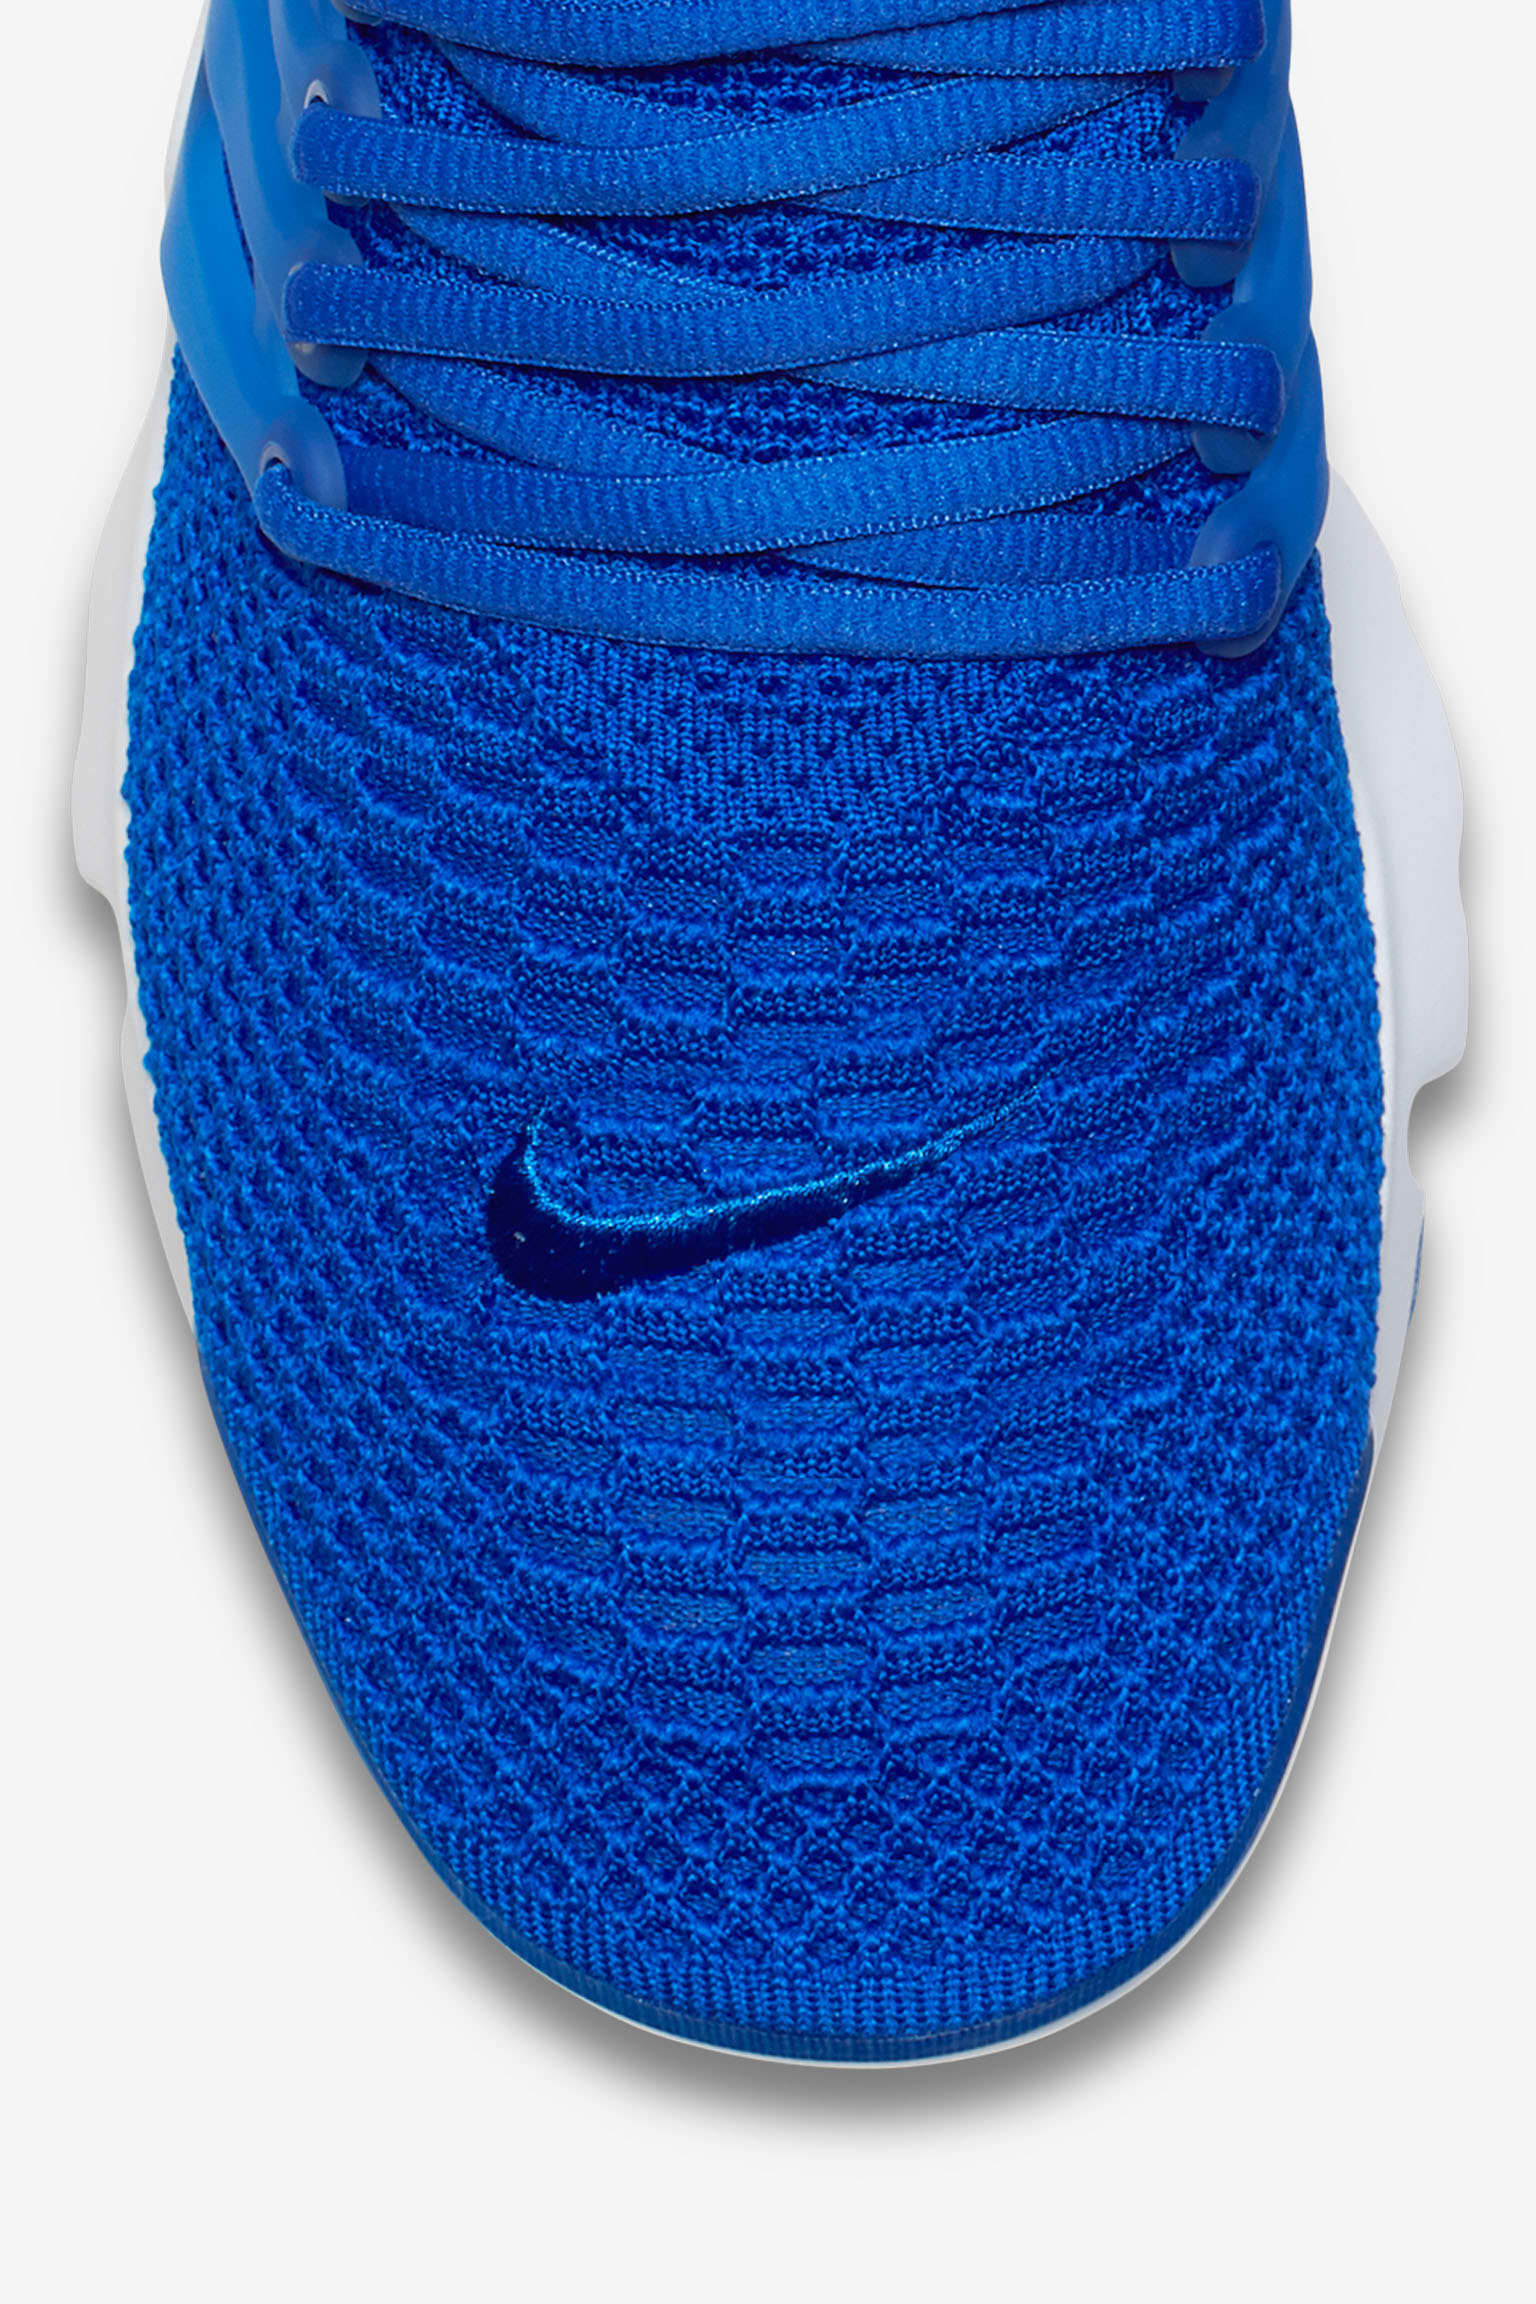 Nike Air Presto Ultra Flyknit 'Racer Blue' Release Nike